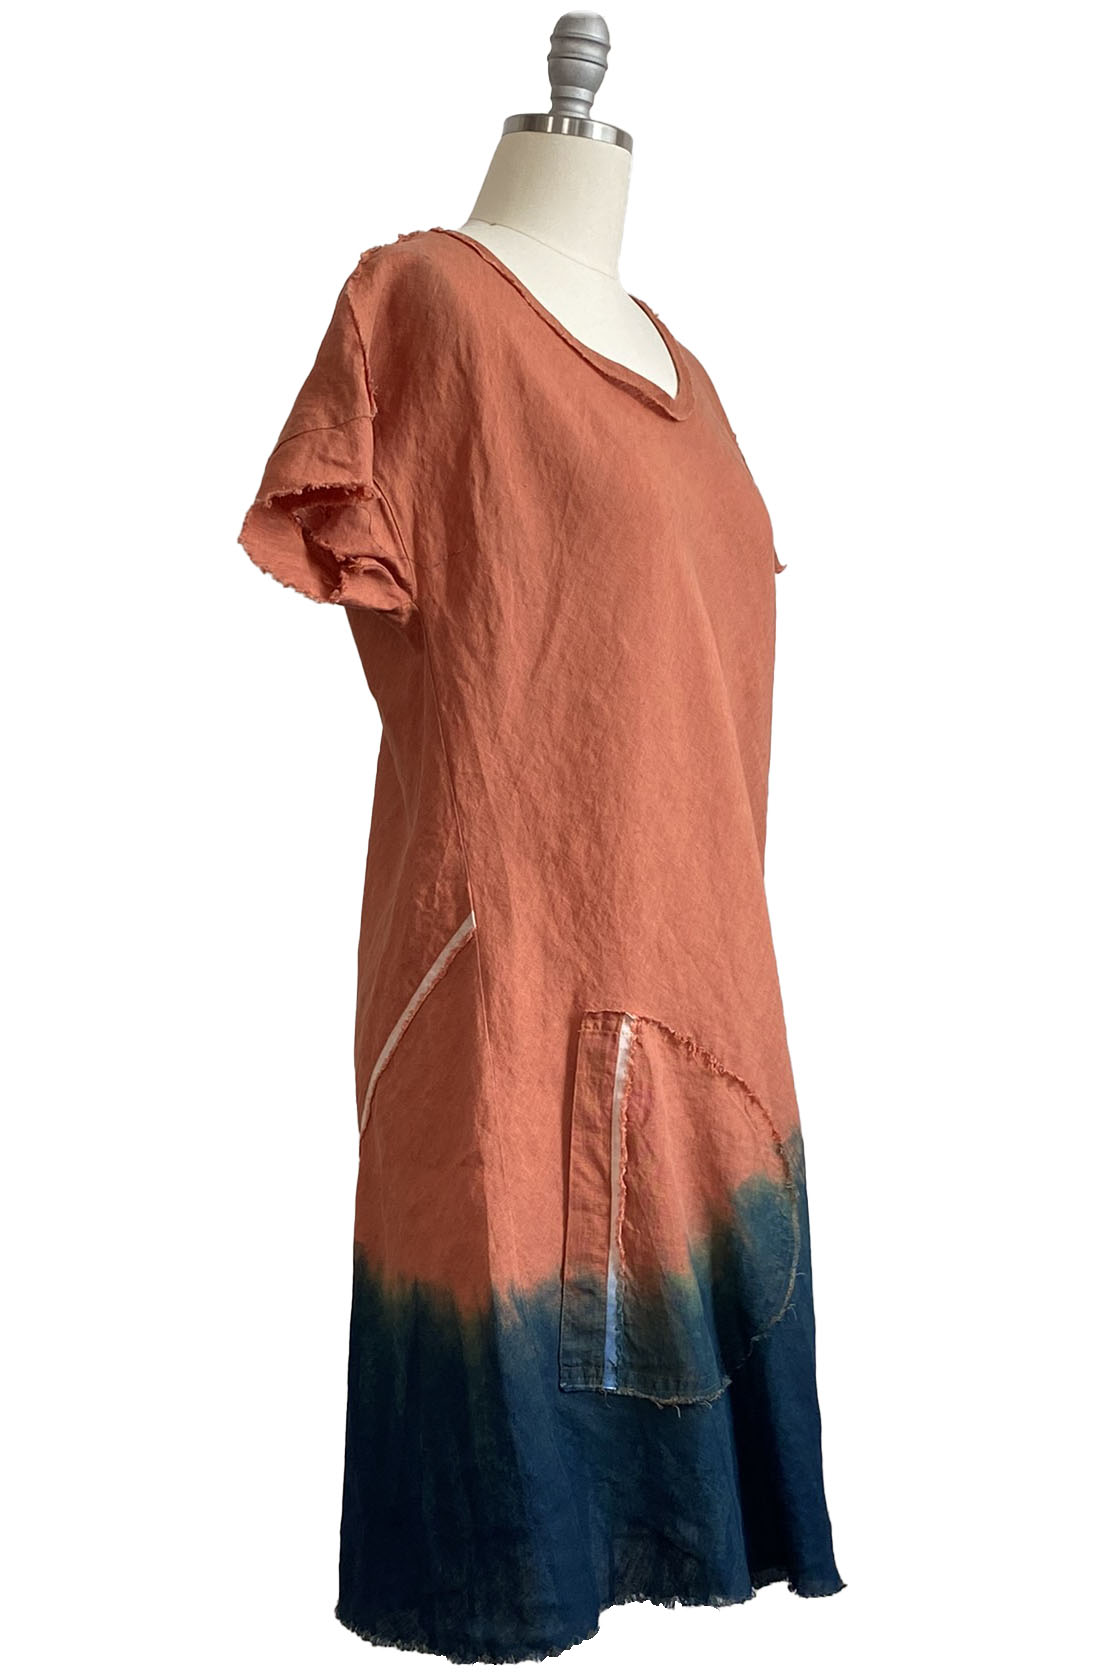 Athena Dress w/ Round Pockets - Orange & Navy